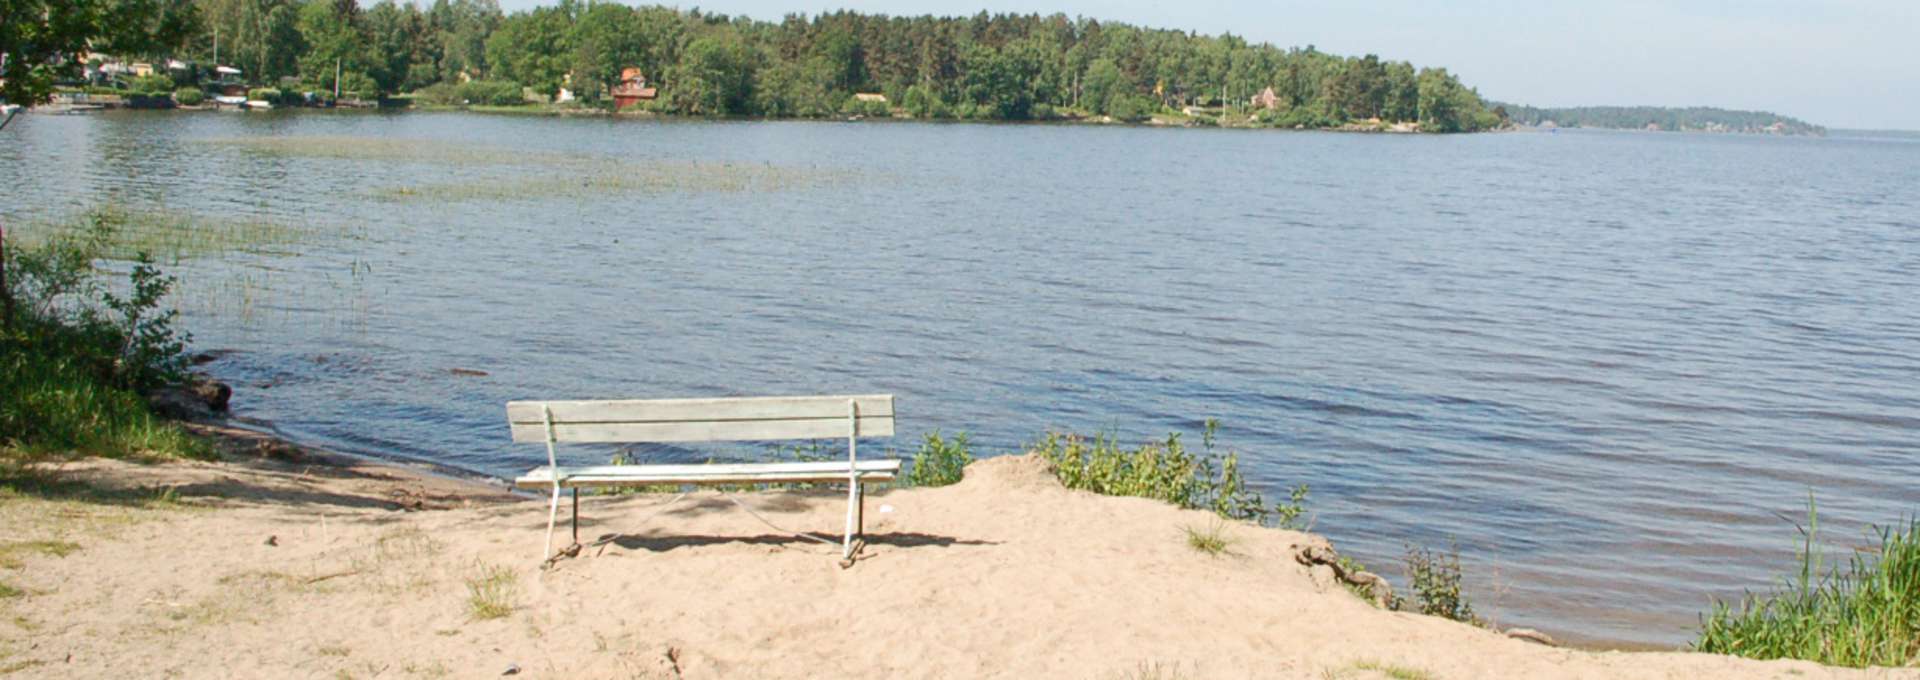 Badplats vid Mälaren med bänk, sandstrand och klarblått vatten